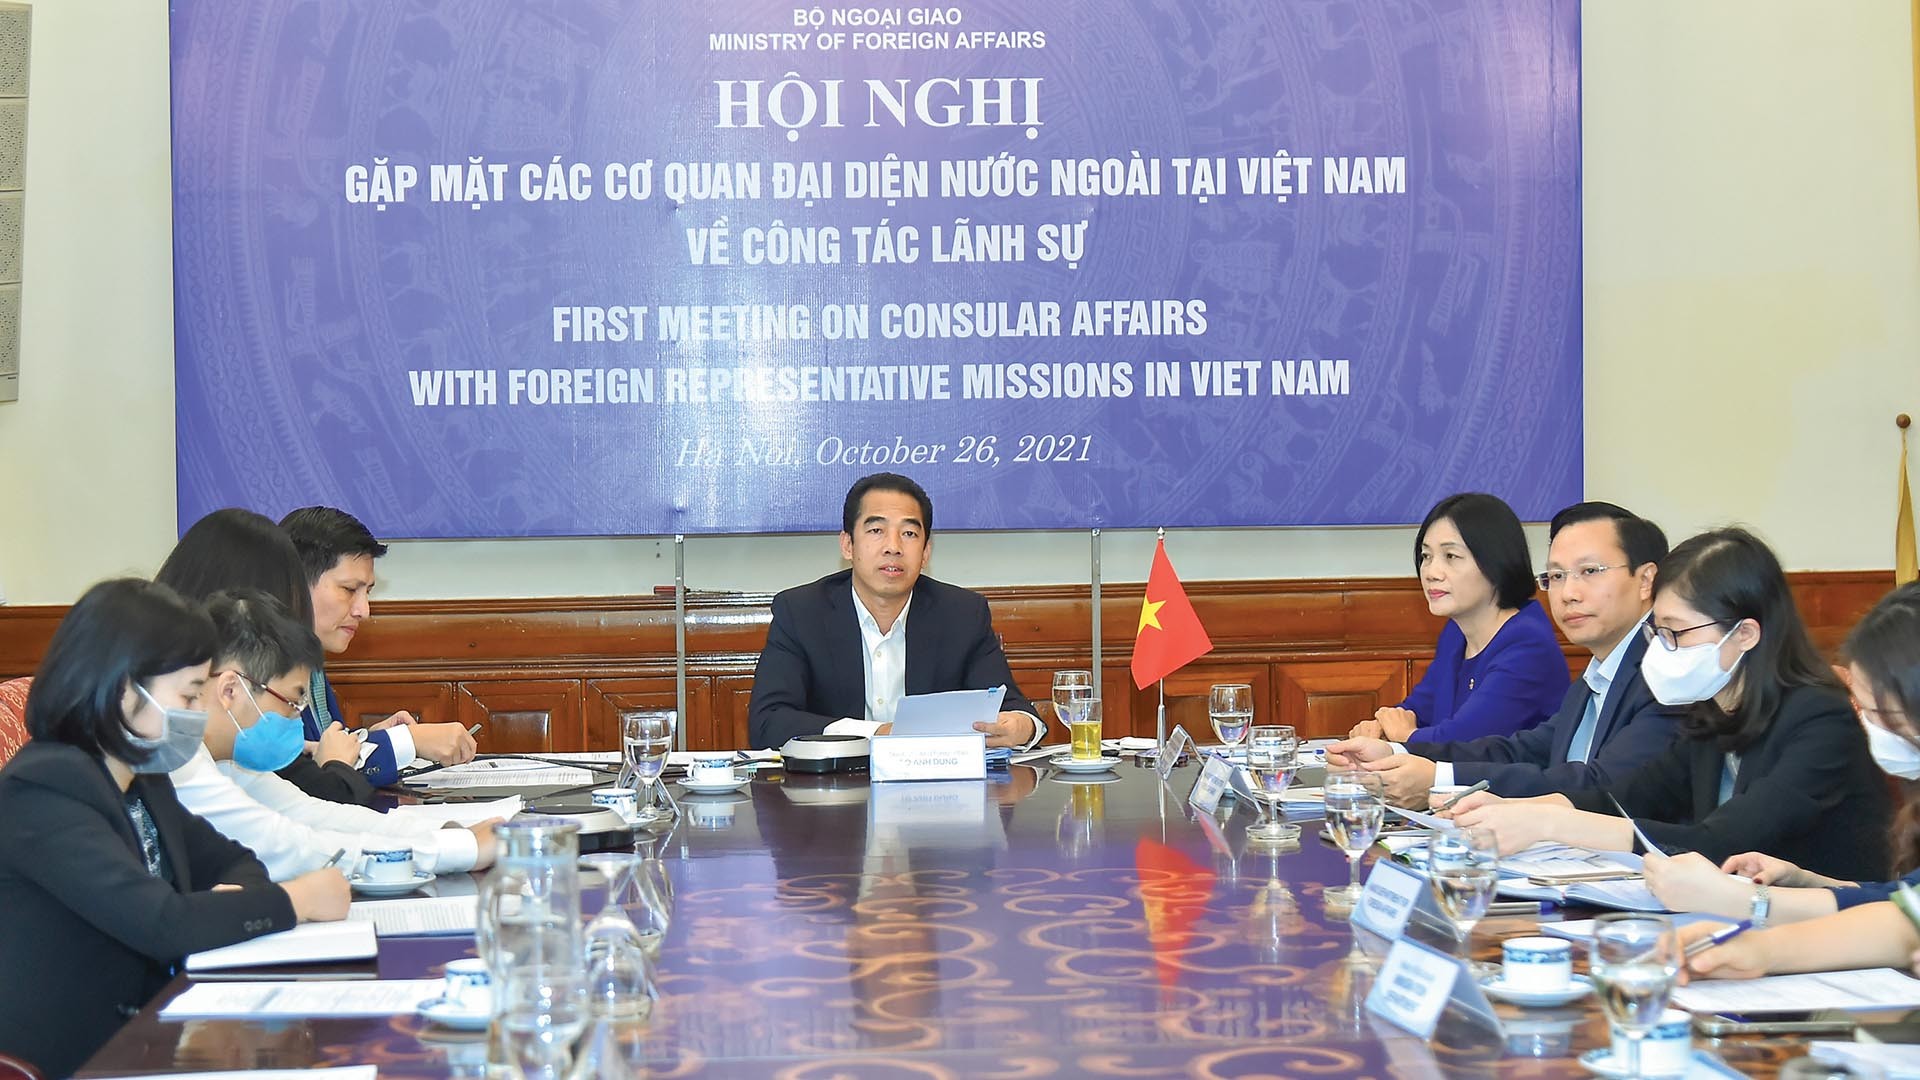 Thứ trưởng Ngoại giao Tô Anh Dũng chủ trì Hội nghị Gặp mặt các cơ quan đại diện nước ngoài tại Việt Nam về công tác lãnh sự. (Ảnh: Tuấn Anh)